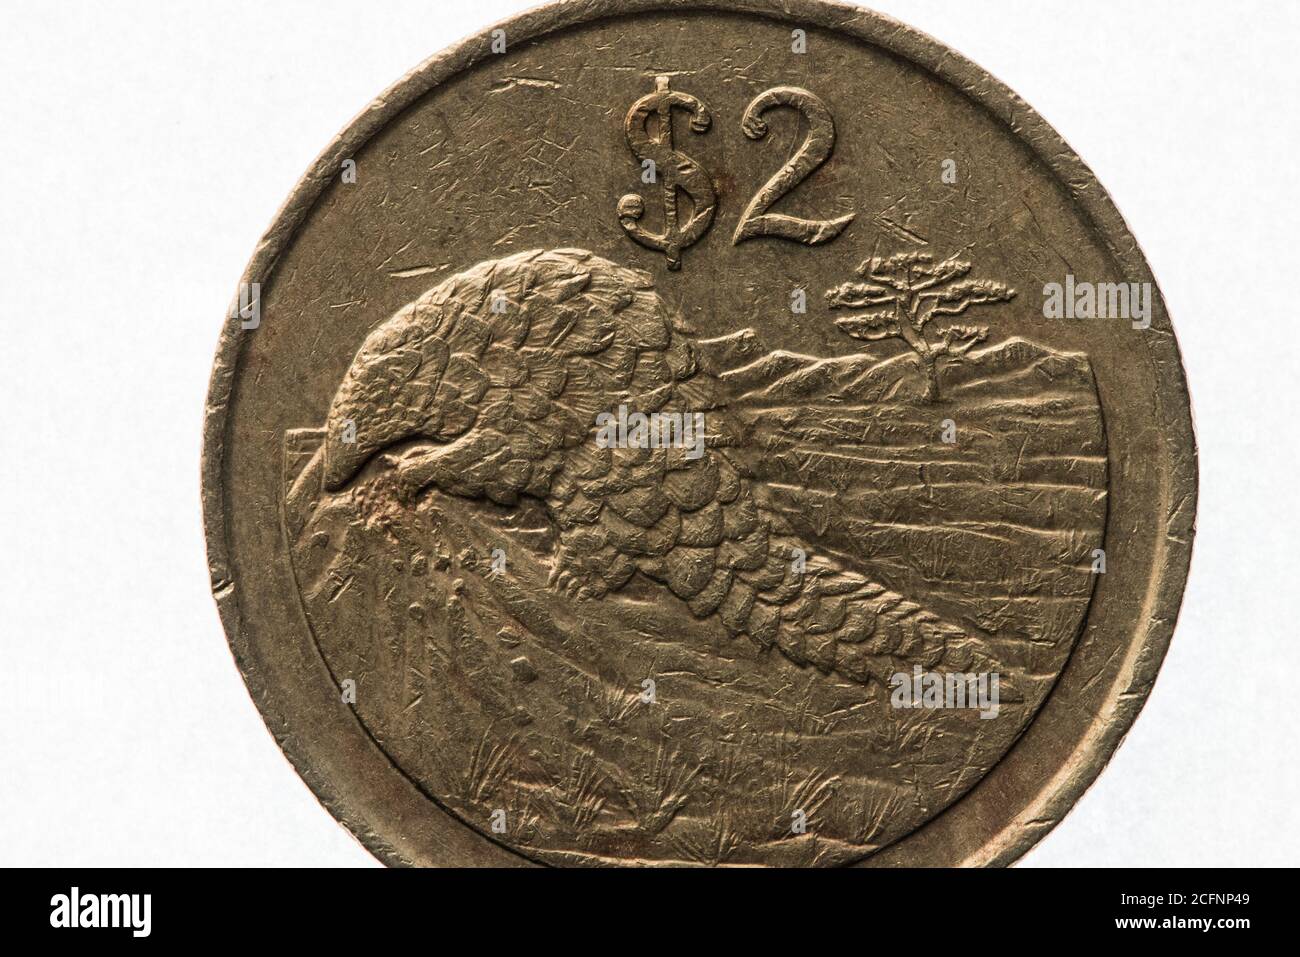 Ein afrikanisches Pangolin, ein gefährdetes Tier, auf der 2-Dollar-Münze von Simbabwe. Stockfoto